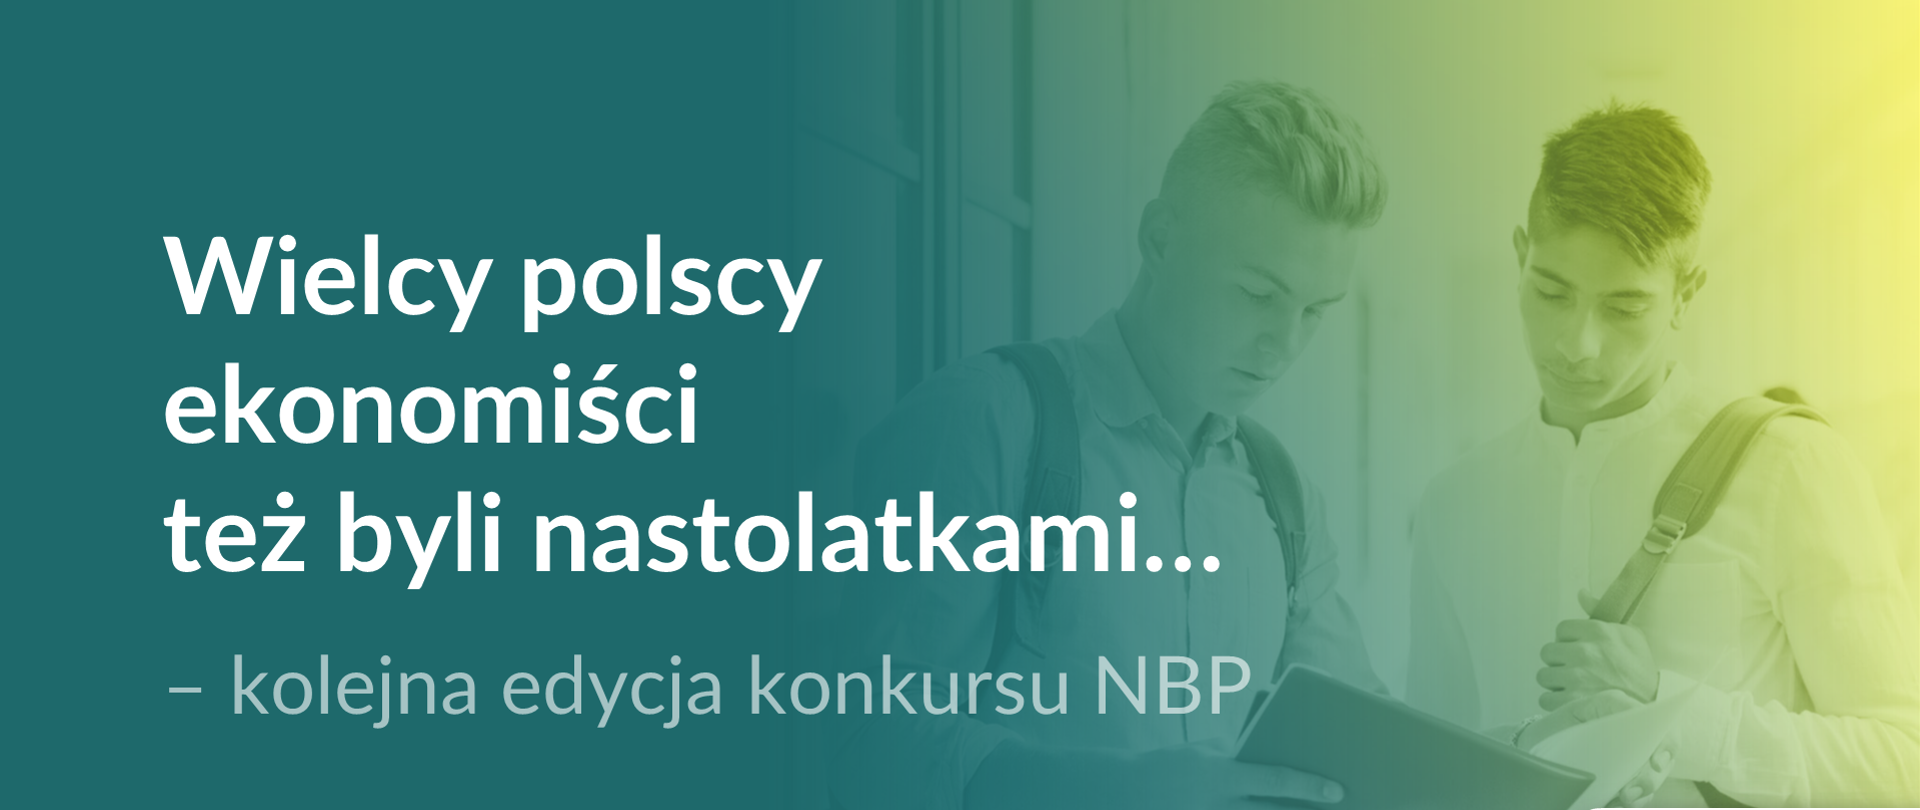 Wielcy polscy ekonomiści też byli nastolatkami.. - kolejna edycja konkursu NBP Plansza z białym napisem na zielonym tle. Z prawej strony uczniowie patrzący na jakiś zeszyt